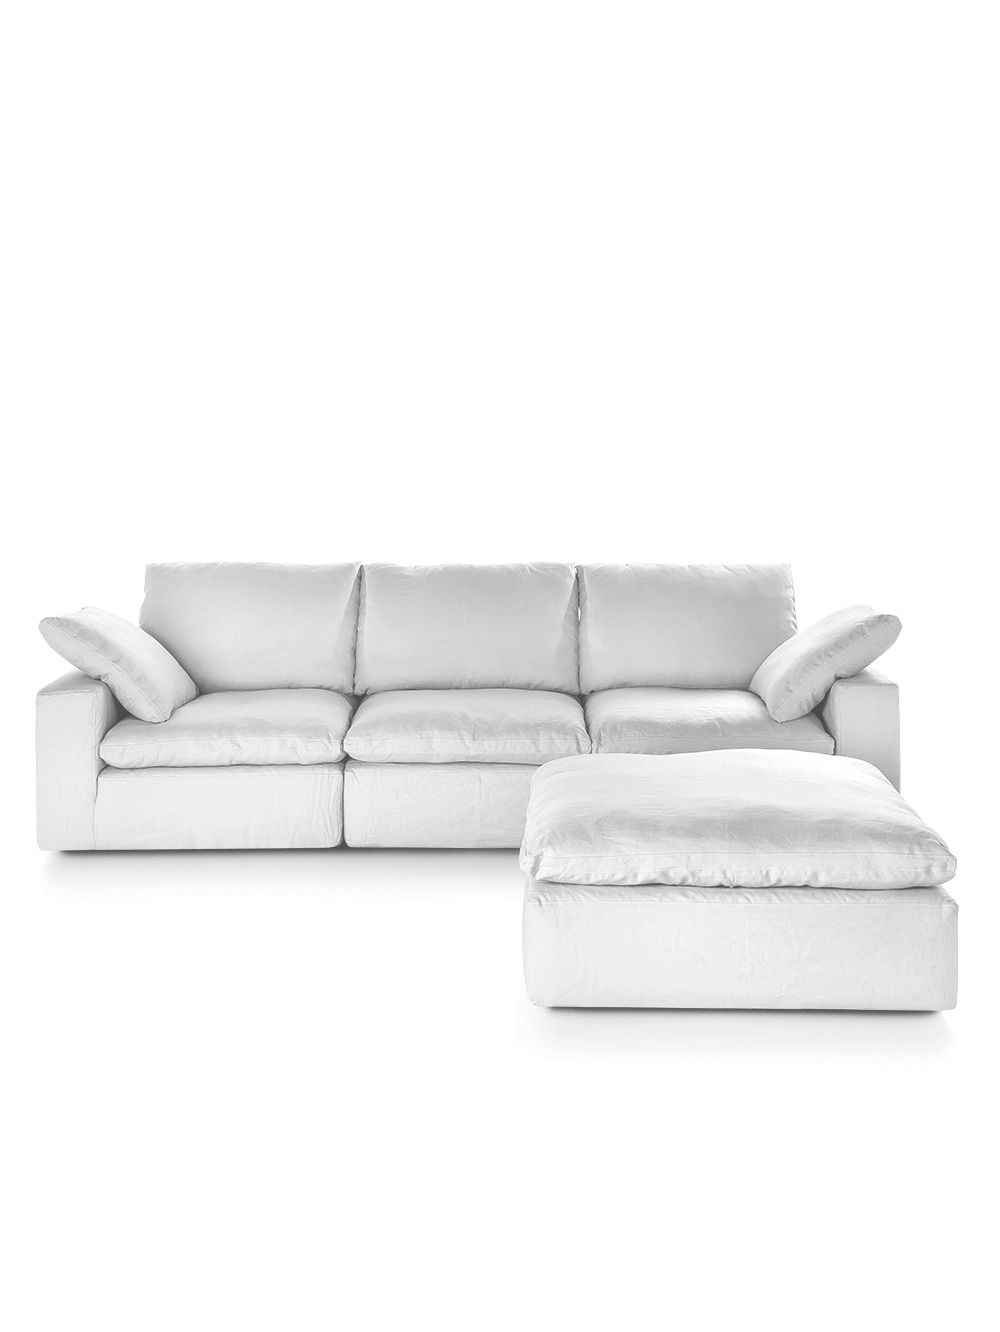 Sofa-modular-de-lino-blanco-NUBE-LINO-SOSIEGO-BLANCO-Landmark-00